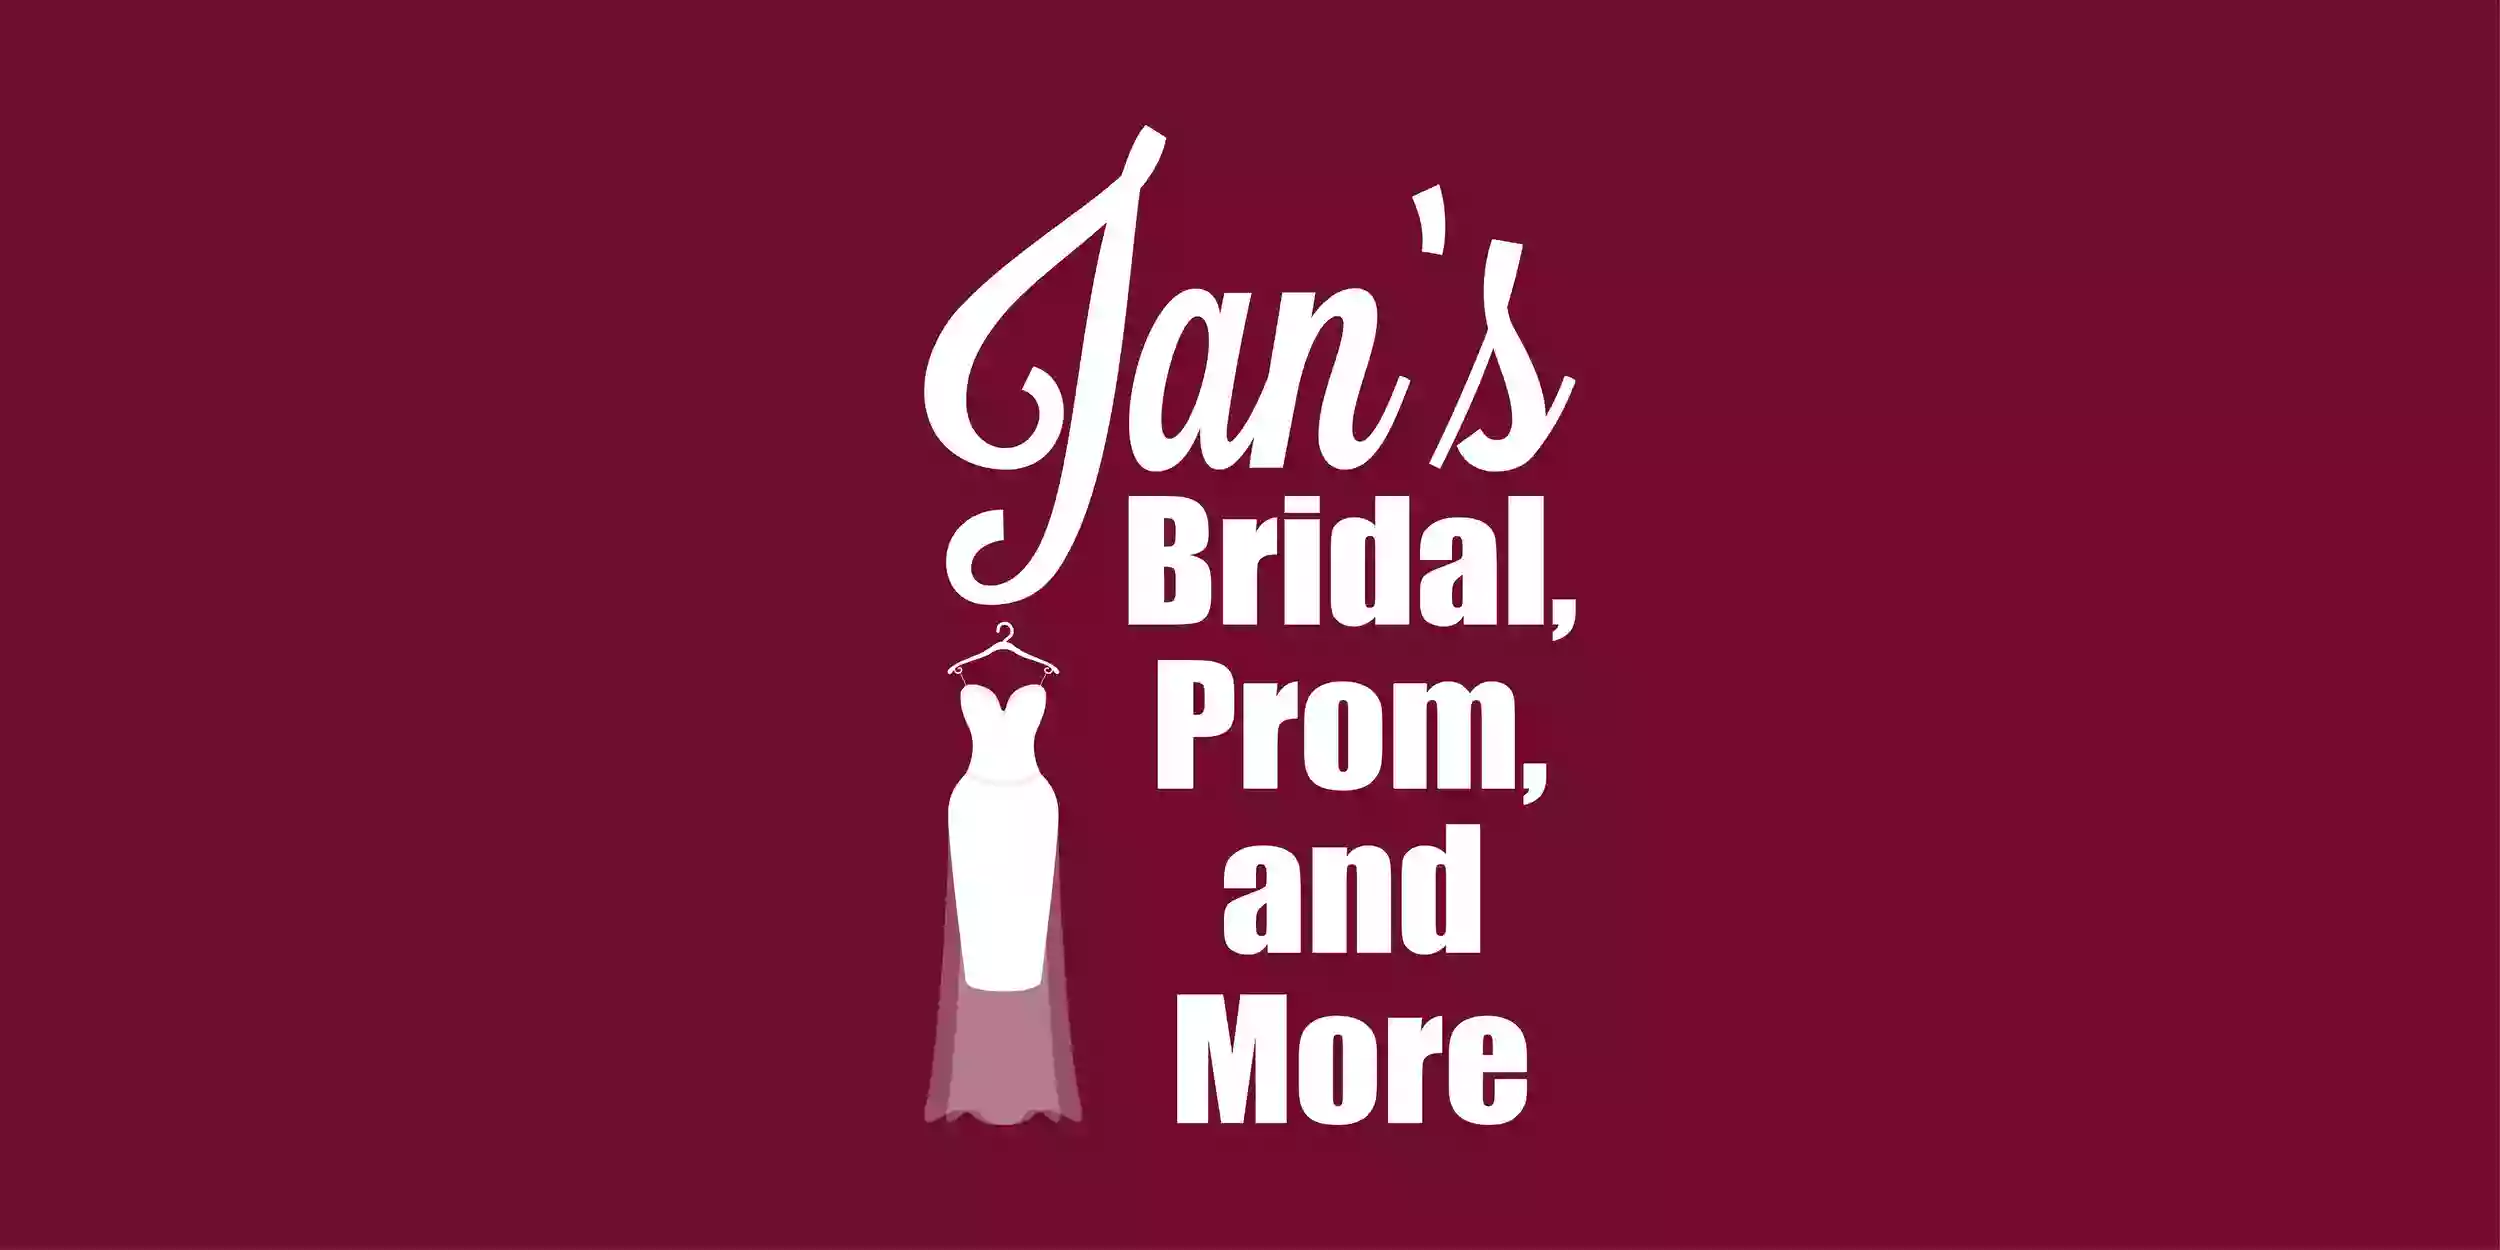 Jan's Bridal Prom & More